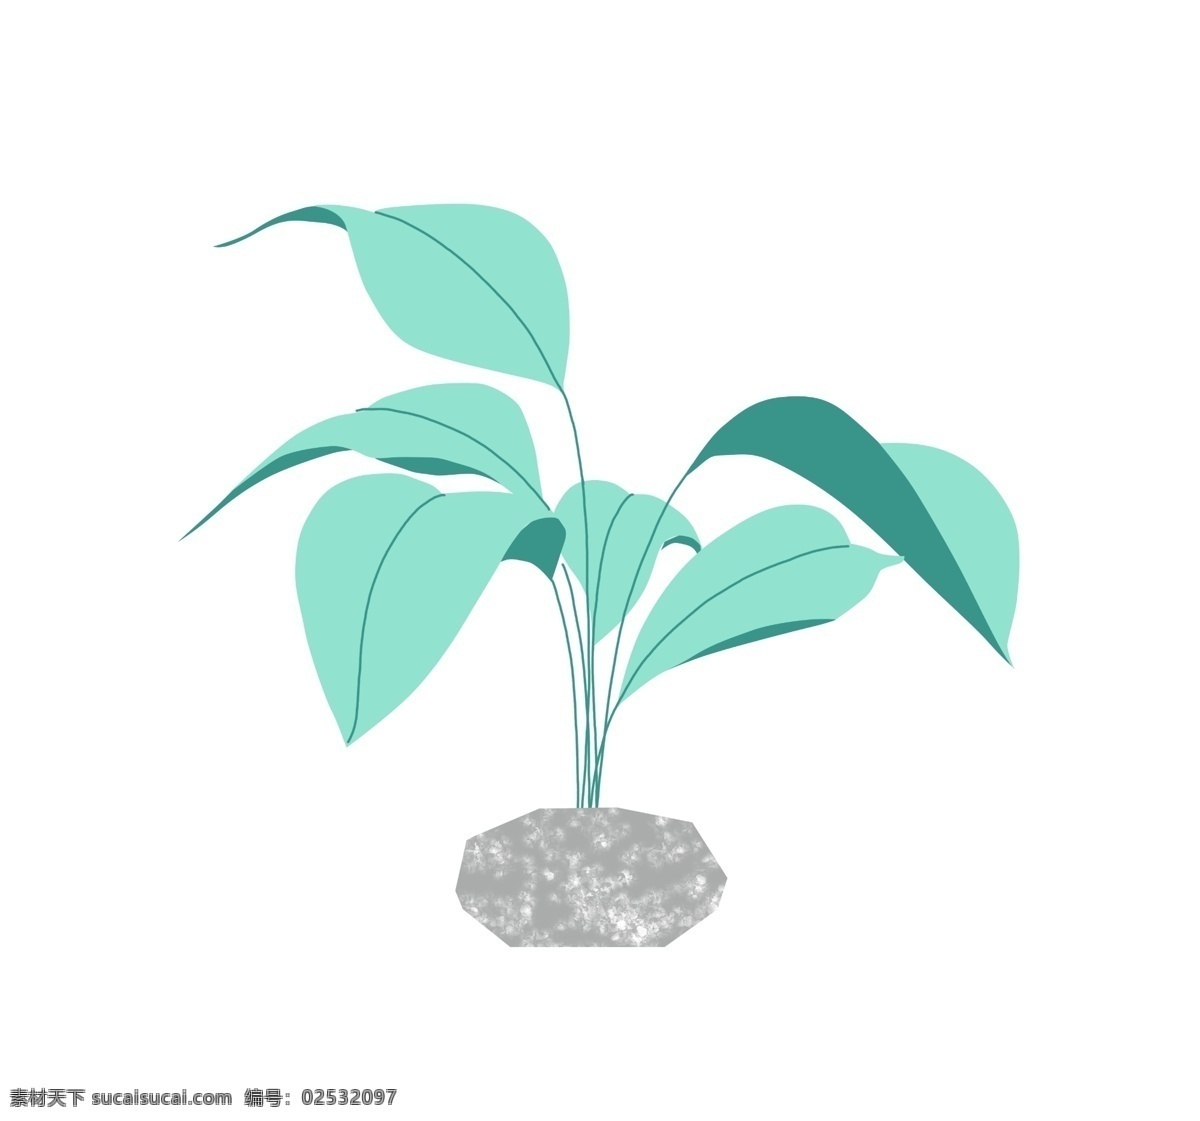 唯美 绿色 叶子 插画 唯美植物插画 石头 绿叶 绿色的叶子 卡通植物插画 绿色植物 卡通树叶插画 树叶